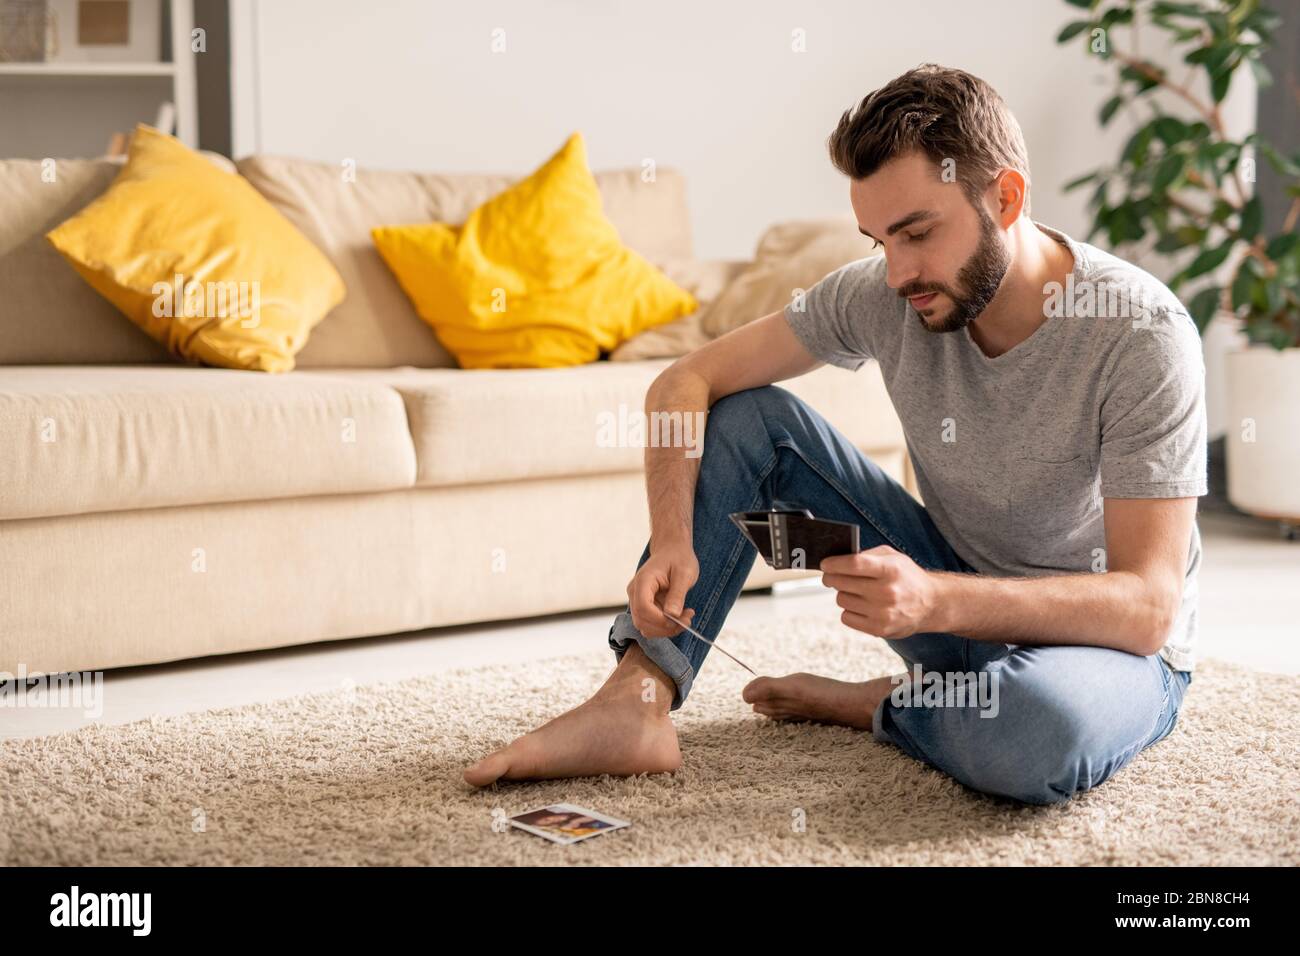 Trauriger junger Mann, der im Wohnzimmer auf einem Teppich sitzt und Fotos durchschaut, während er sich an das Leben vor der Coronavirus-Epidemie erinnert Stockfoto